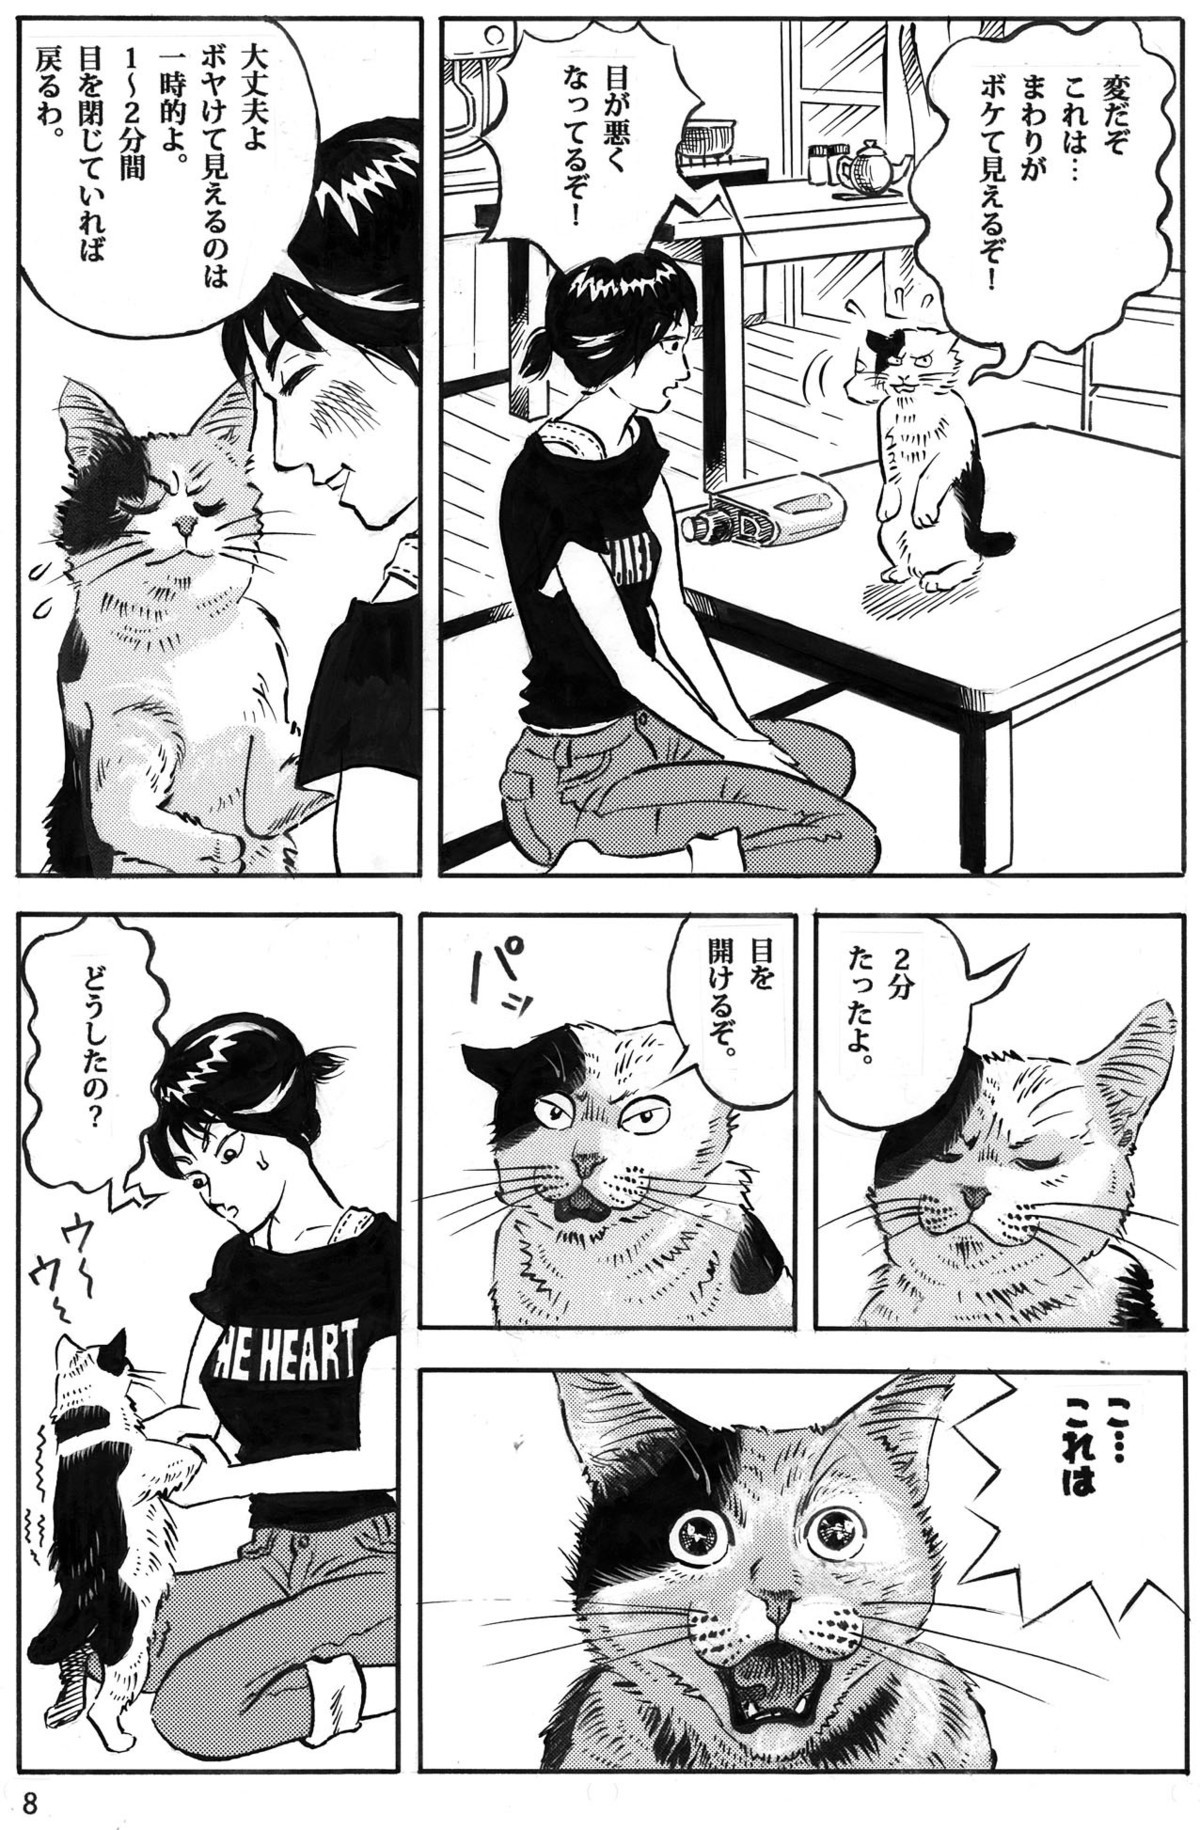 アイパワーの短編猫漫画8p。海丸ミチ。